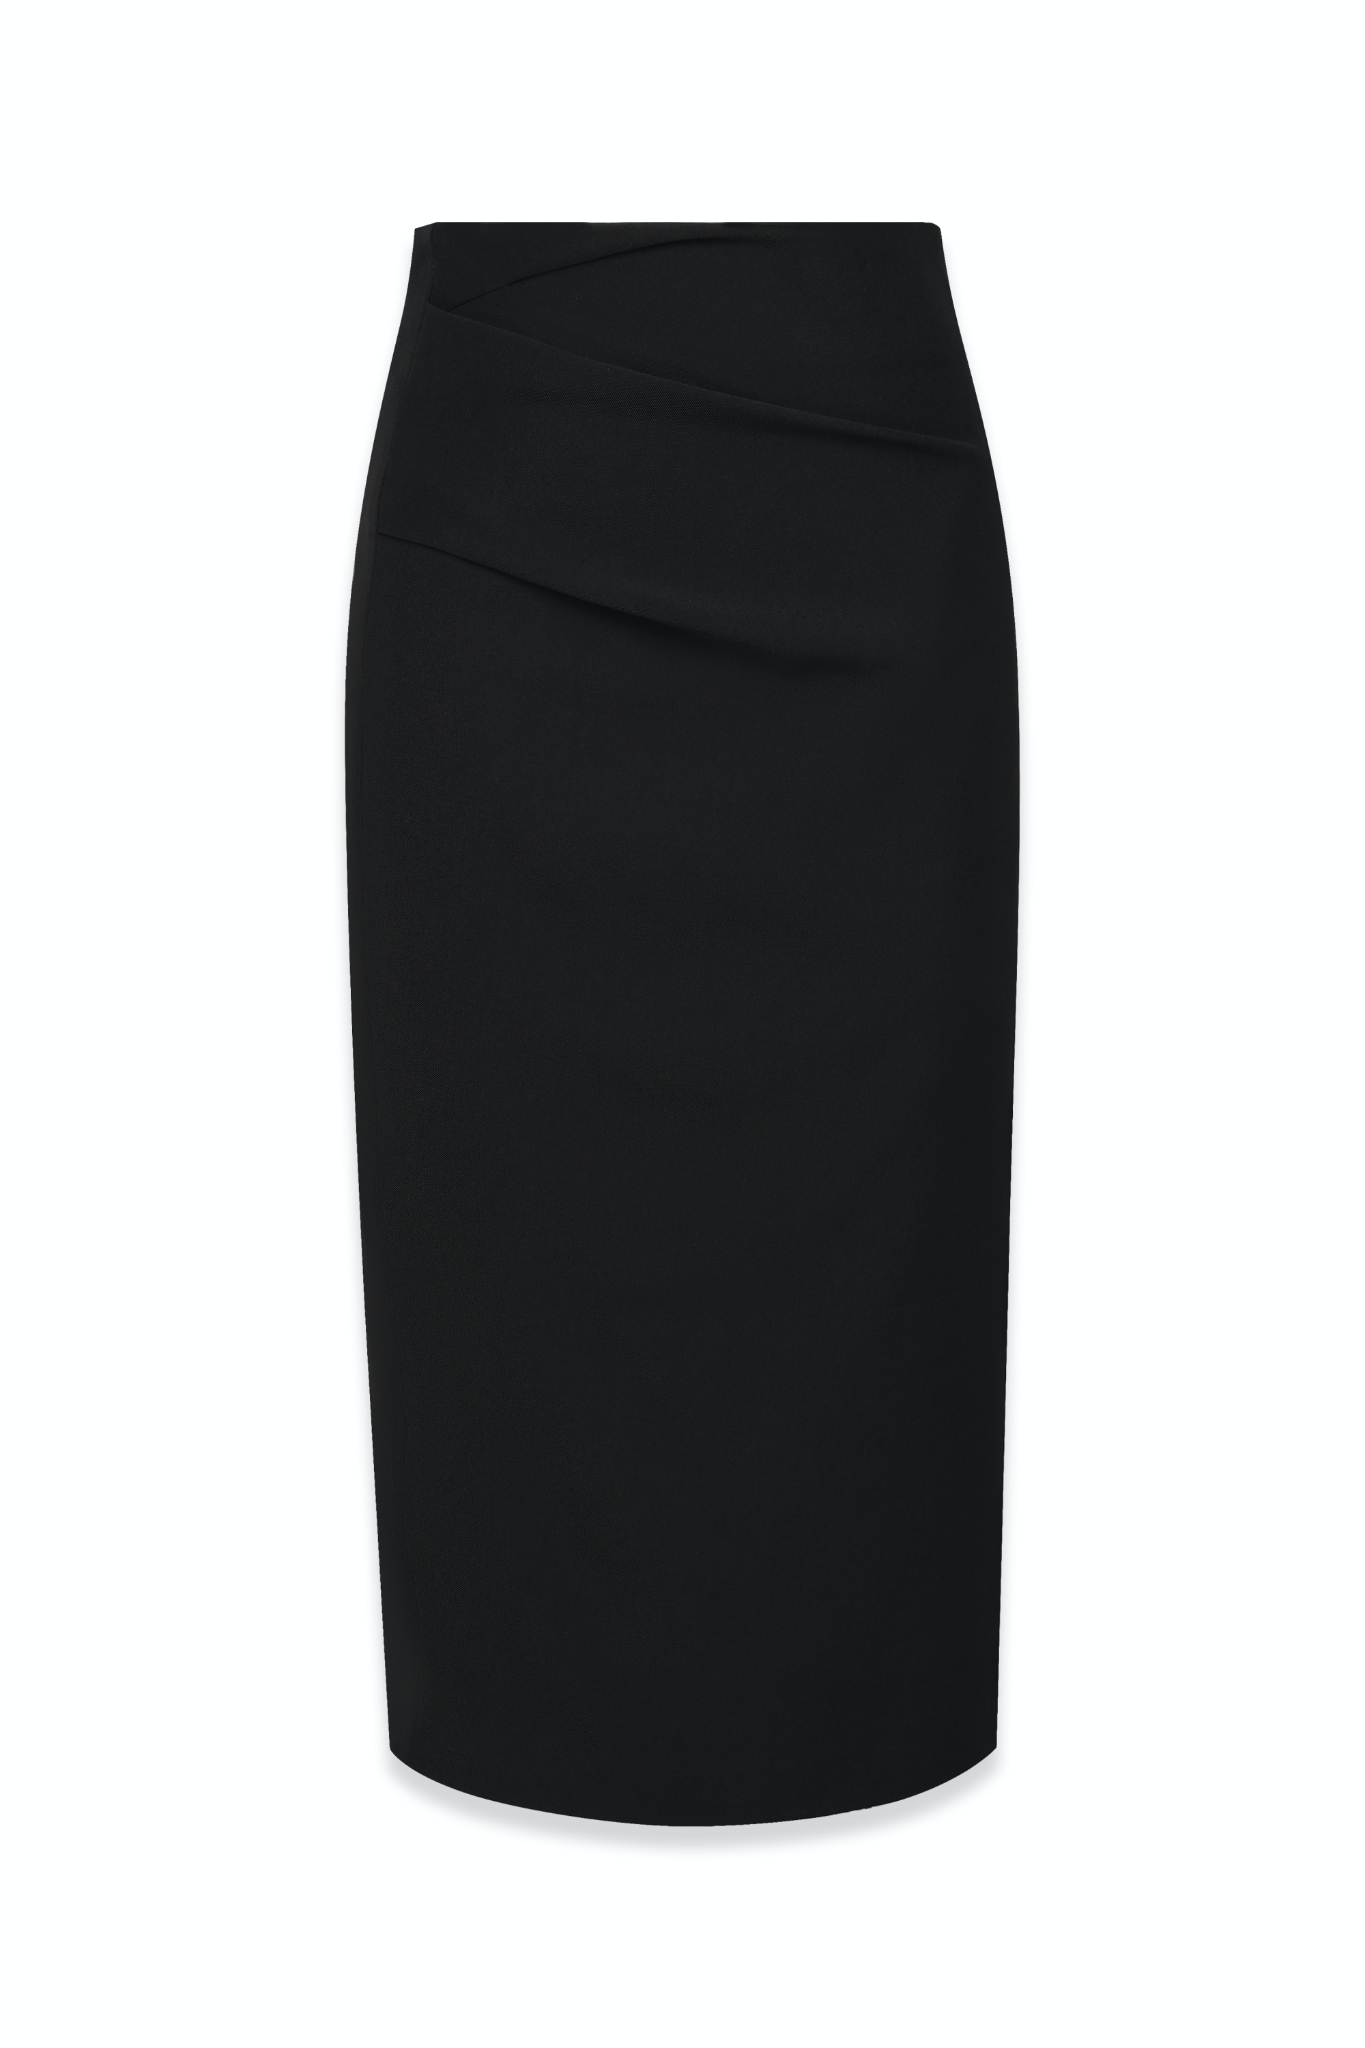 Chân váy công sở dài váy bút chì bigsize cr53v03 màu đen xẻ sau thun umi